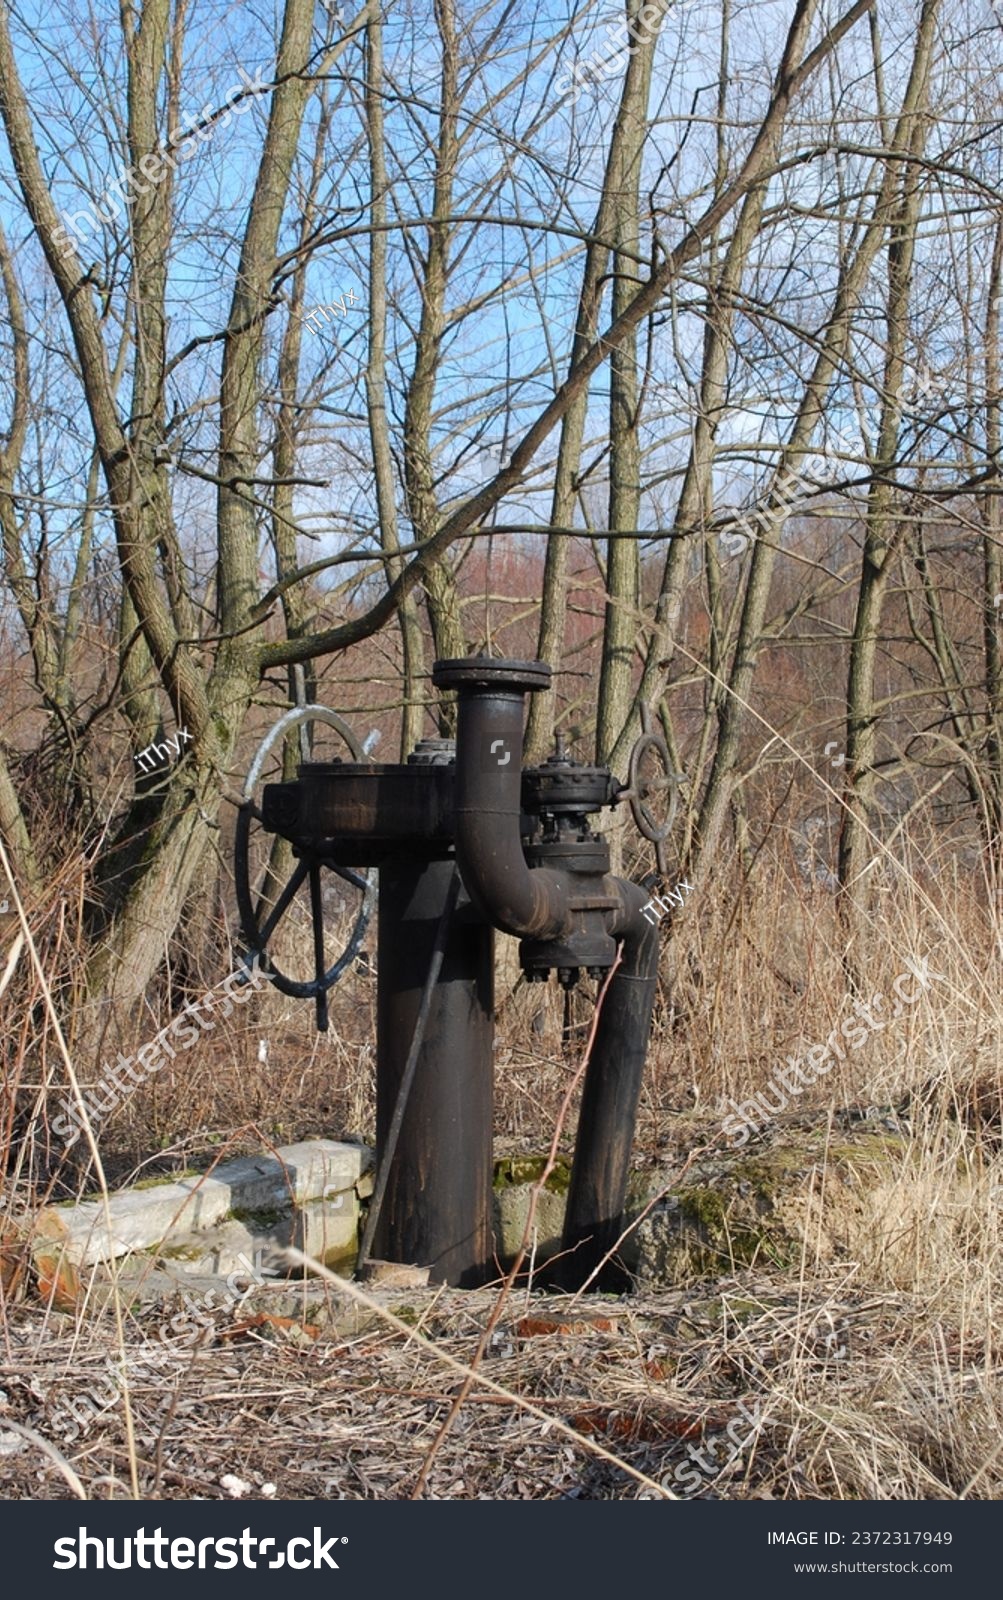 Старый кран с рулем на газовой трубе, расположенный в лесу, солнечный весенний день. Автор фото @iThyx